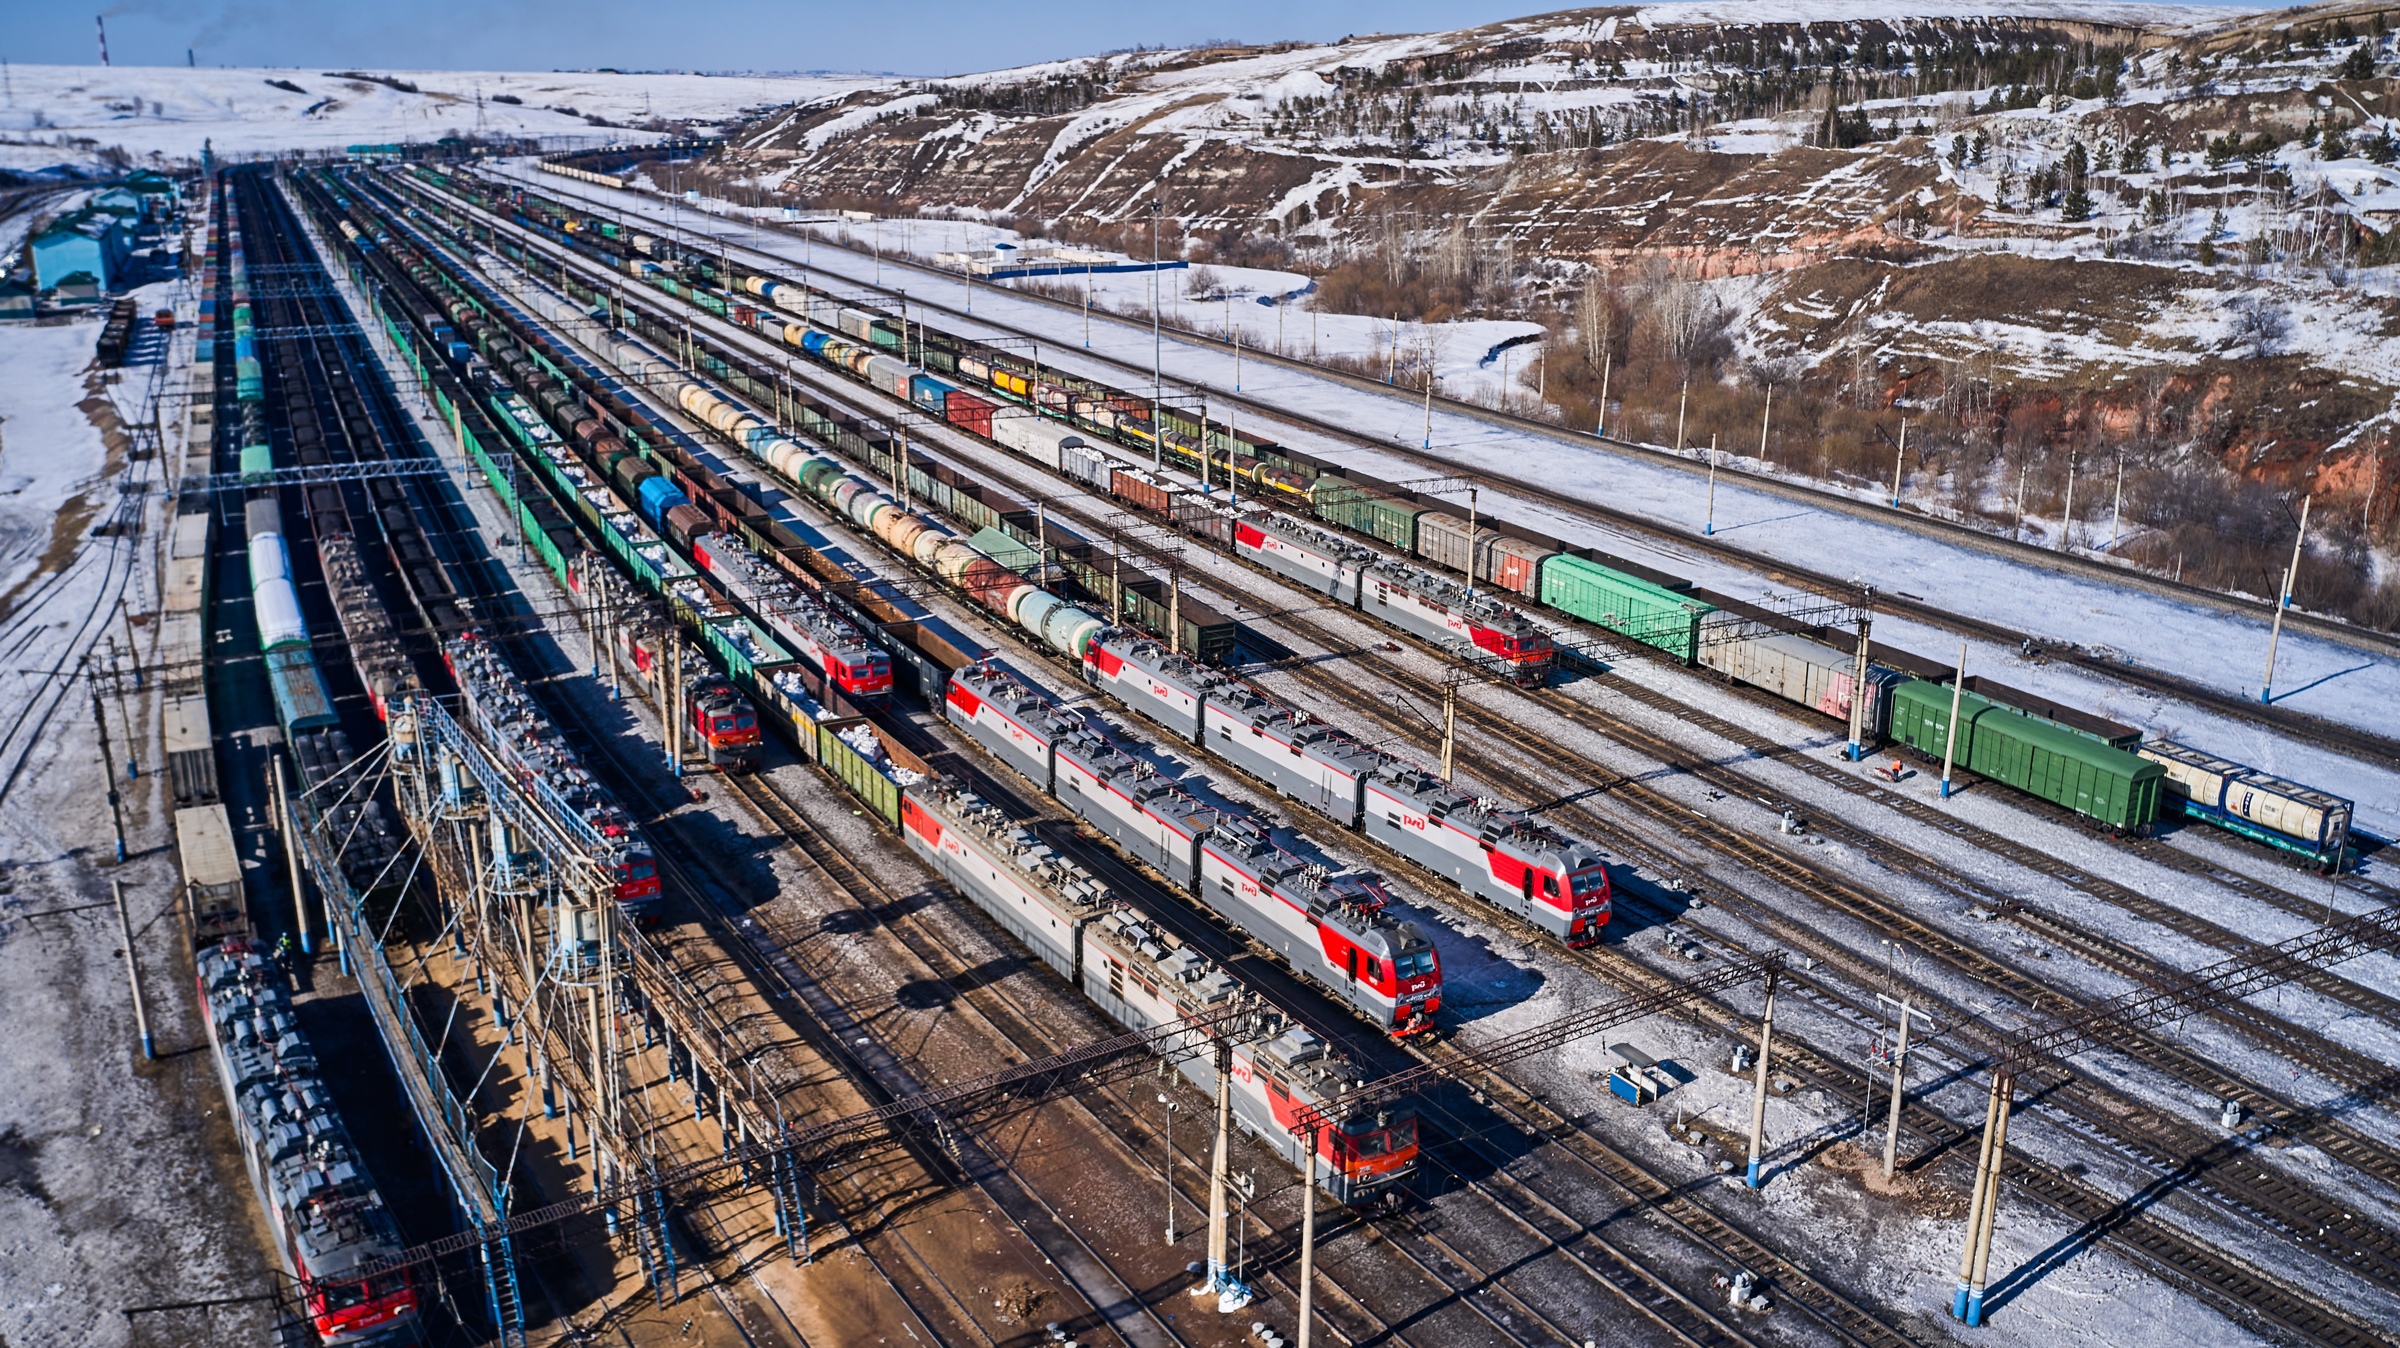 Красноярск-Восточный стала 21 станцией на сети РЖД с интегрированным постом автоматизированного приема и диагностики подвижного состава